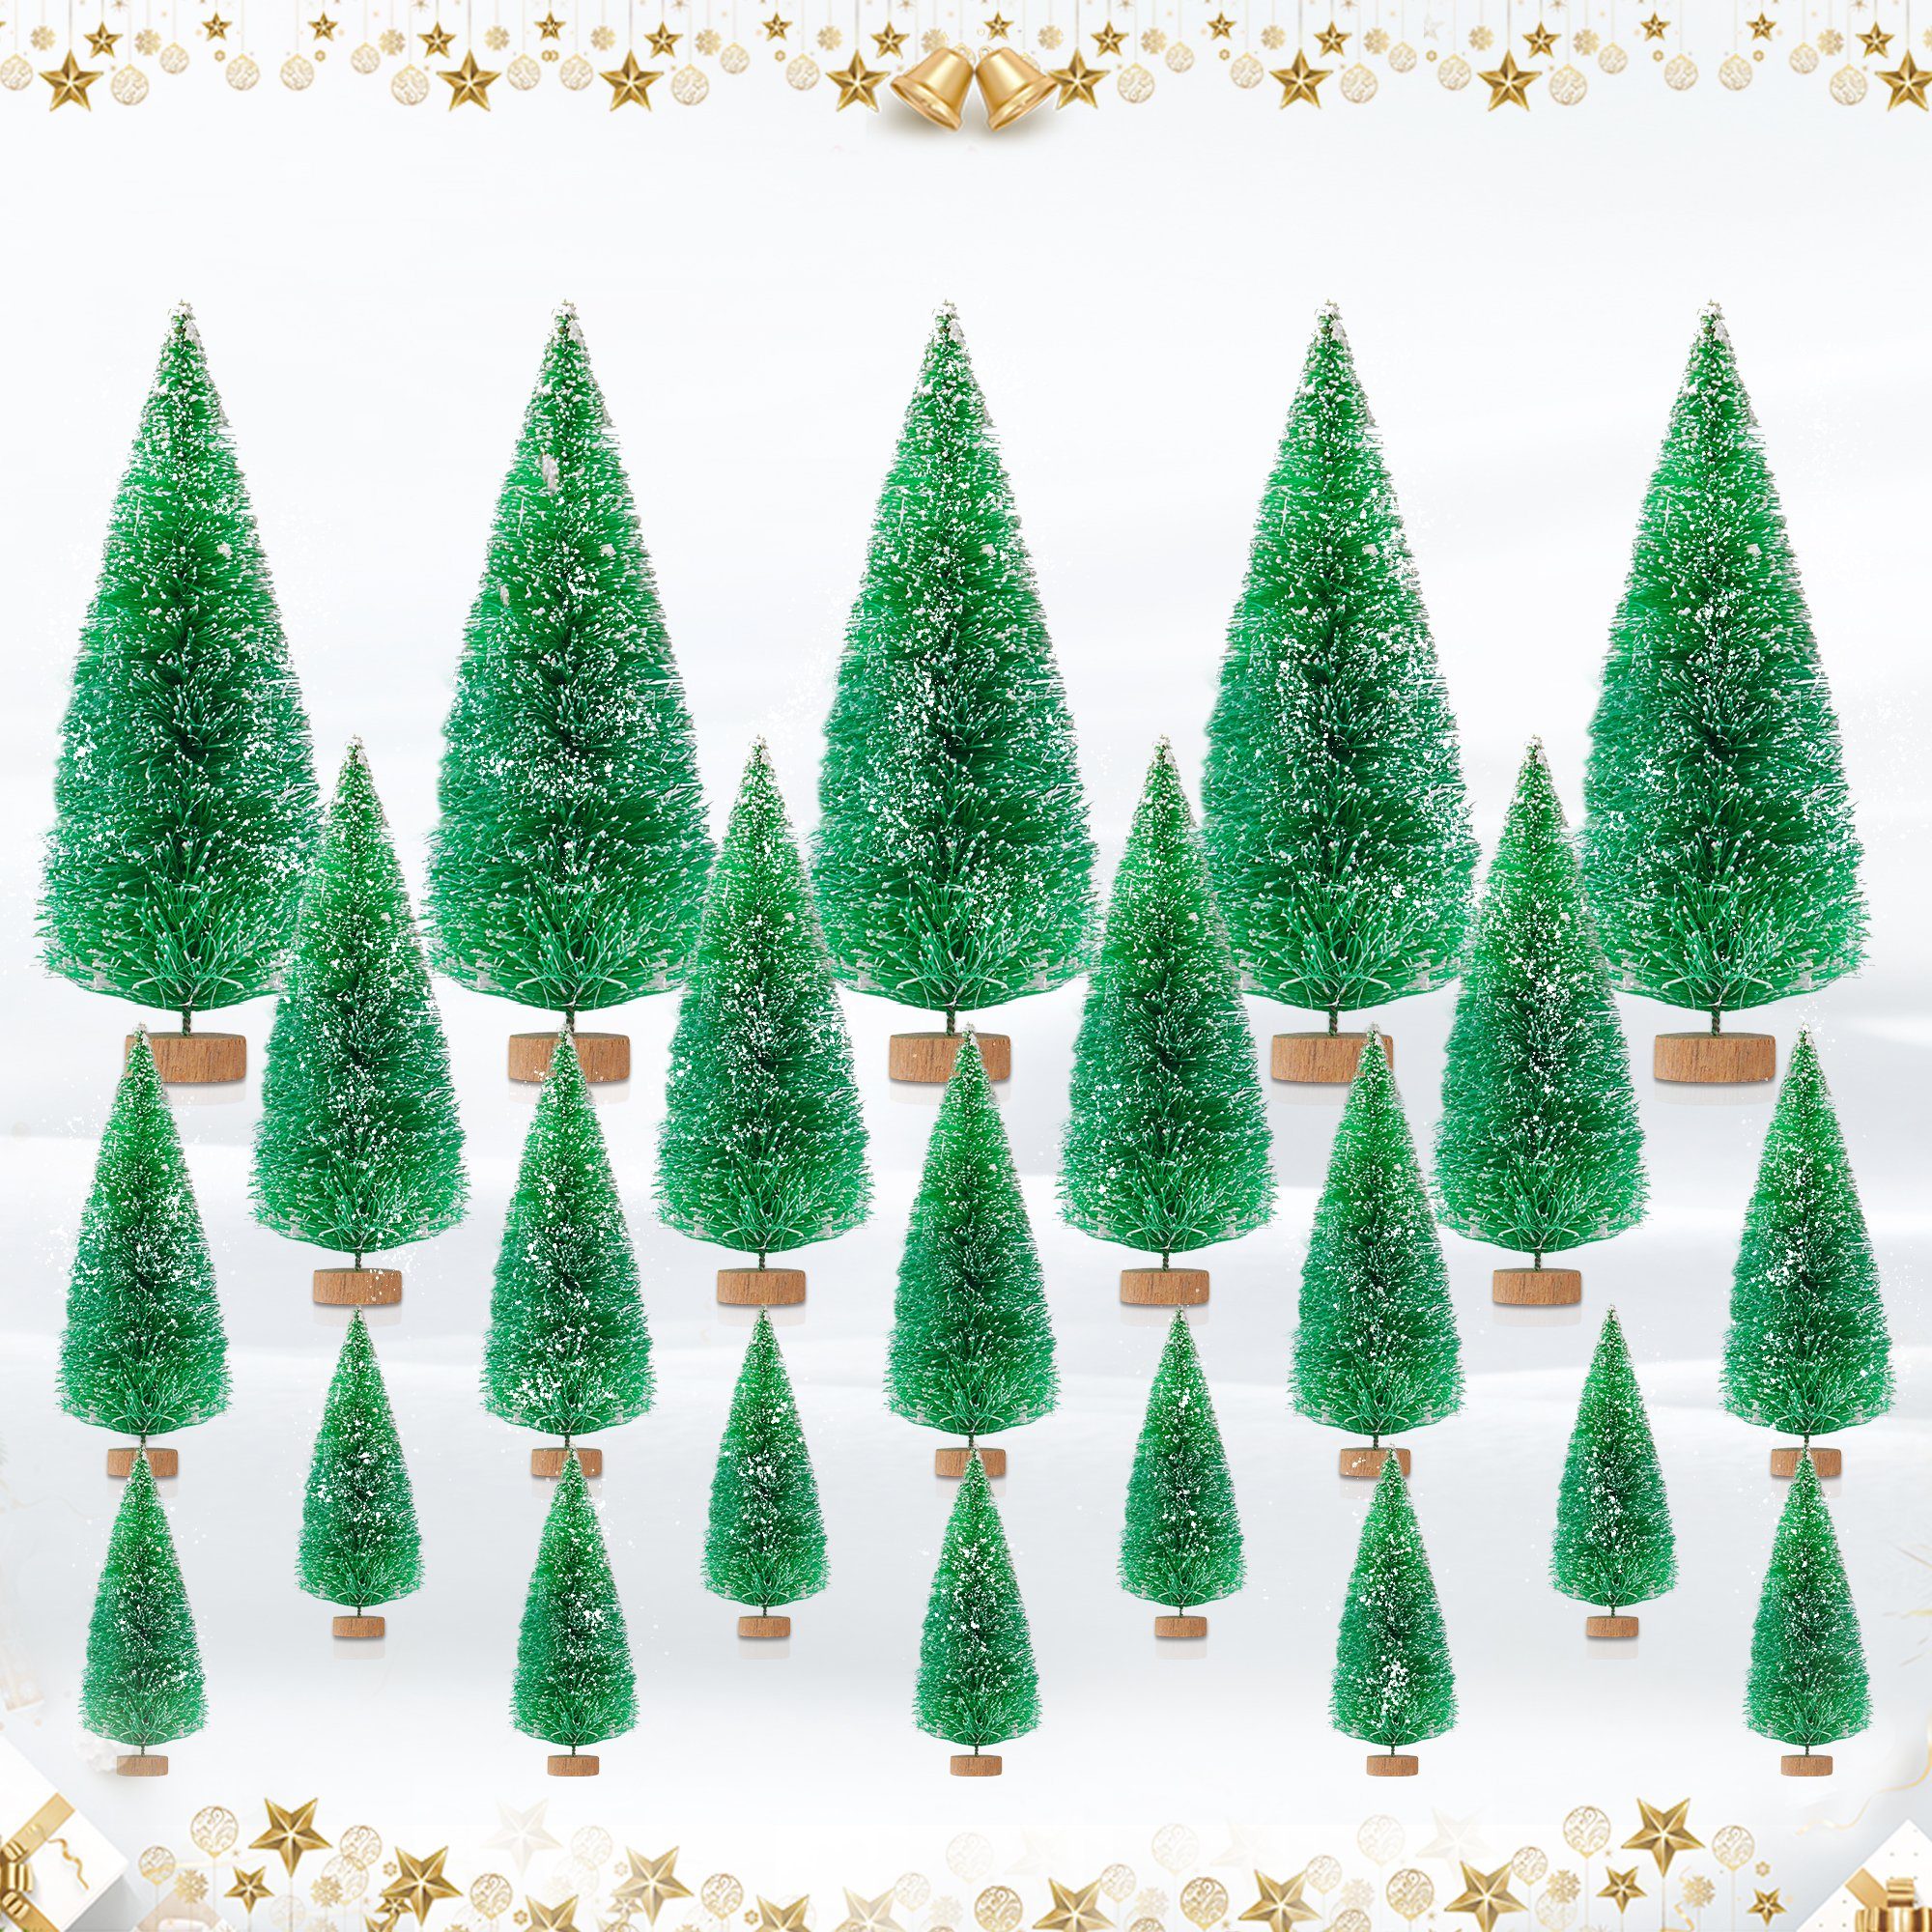 Coonoor Künstlicher Weihnachtsbaum 35×Weihnachtsdekorationen, Tisch-Weihnachtsbäume, Mini-Weihnachtsbäume